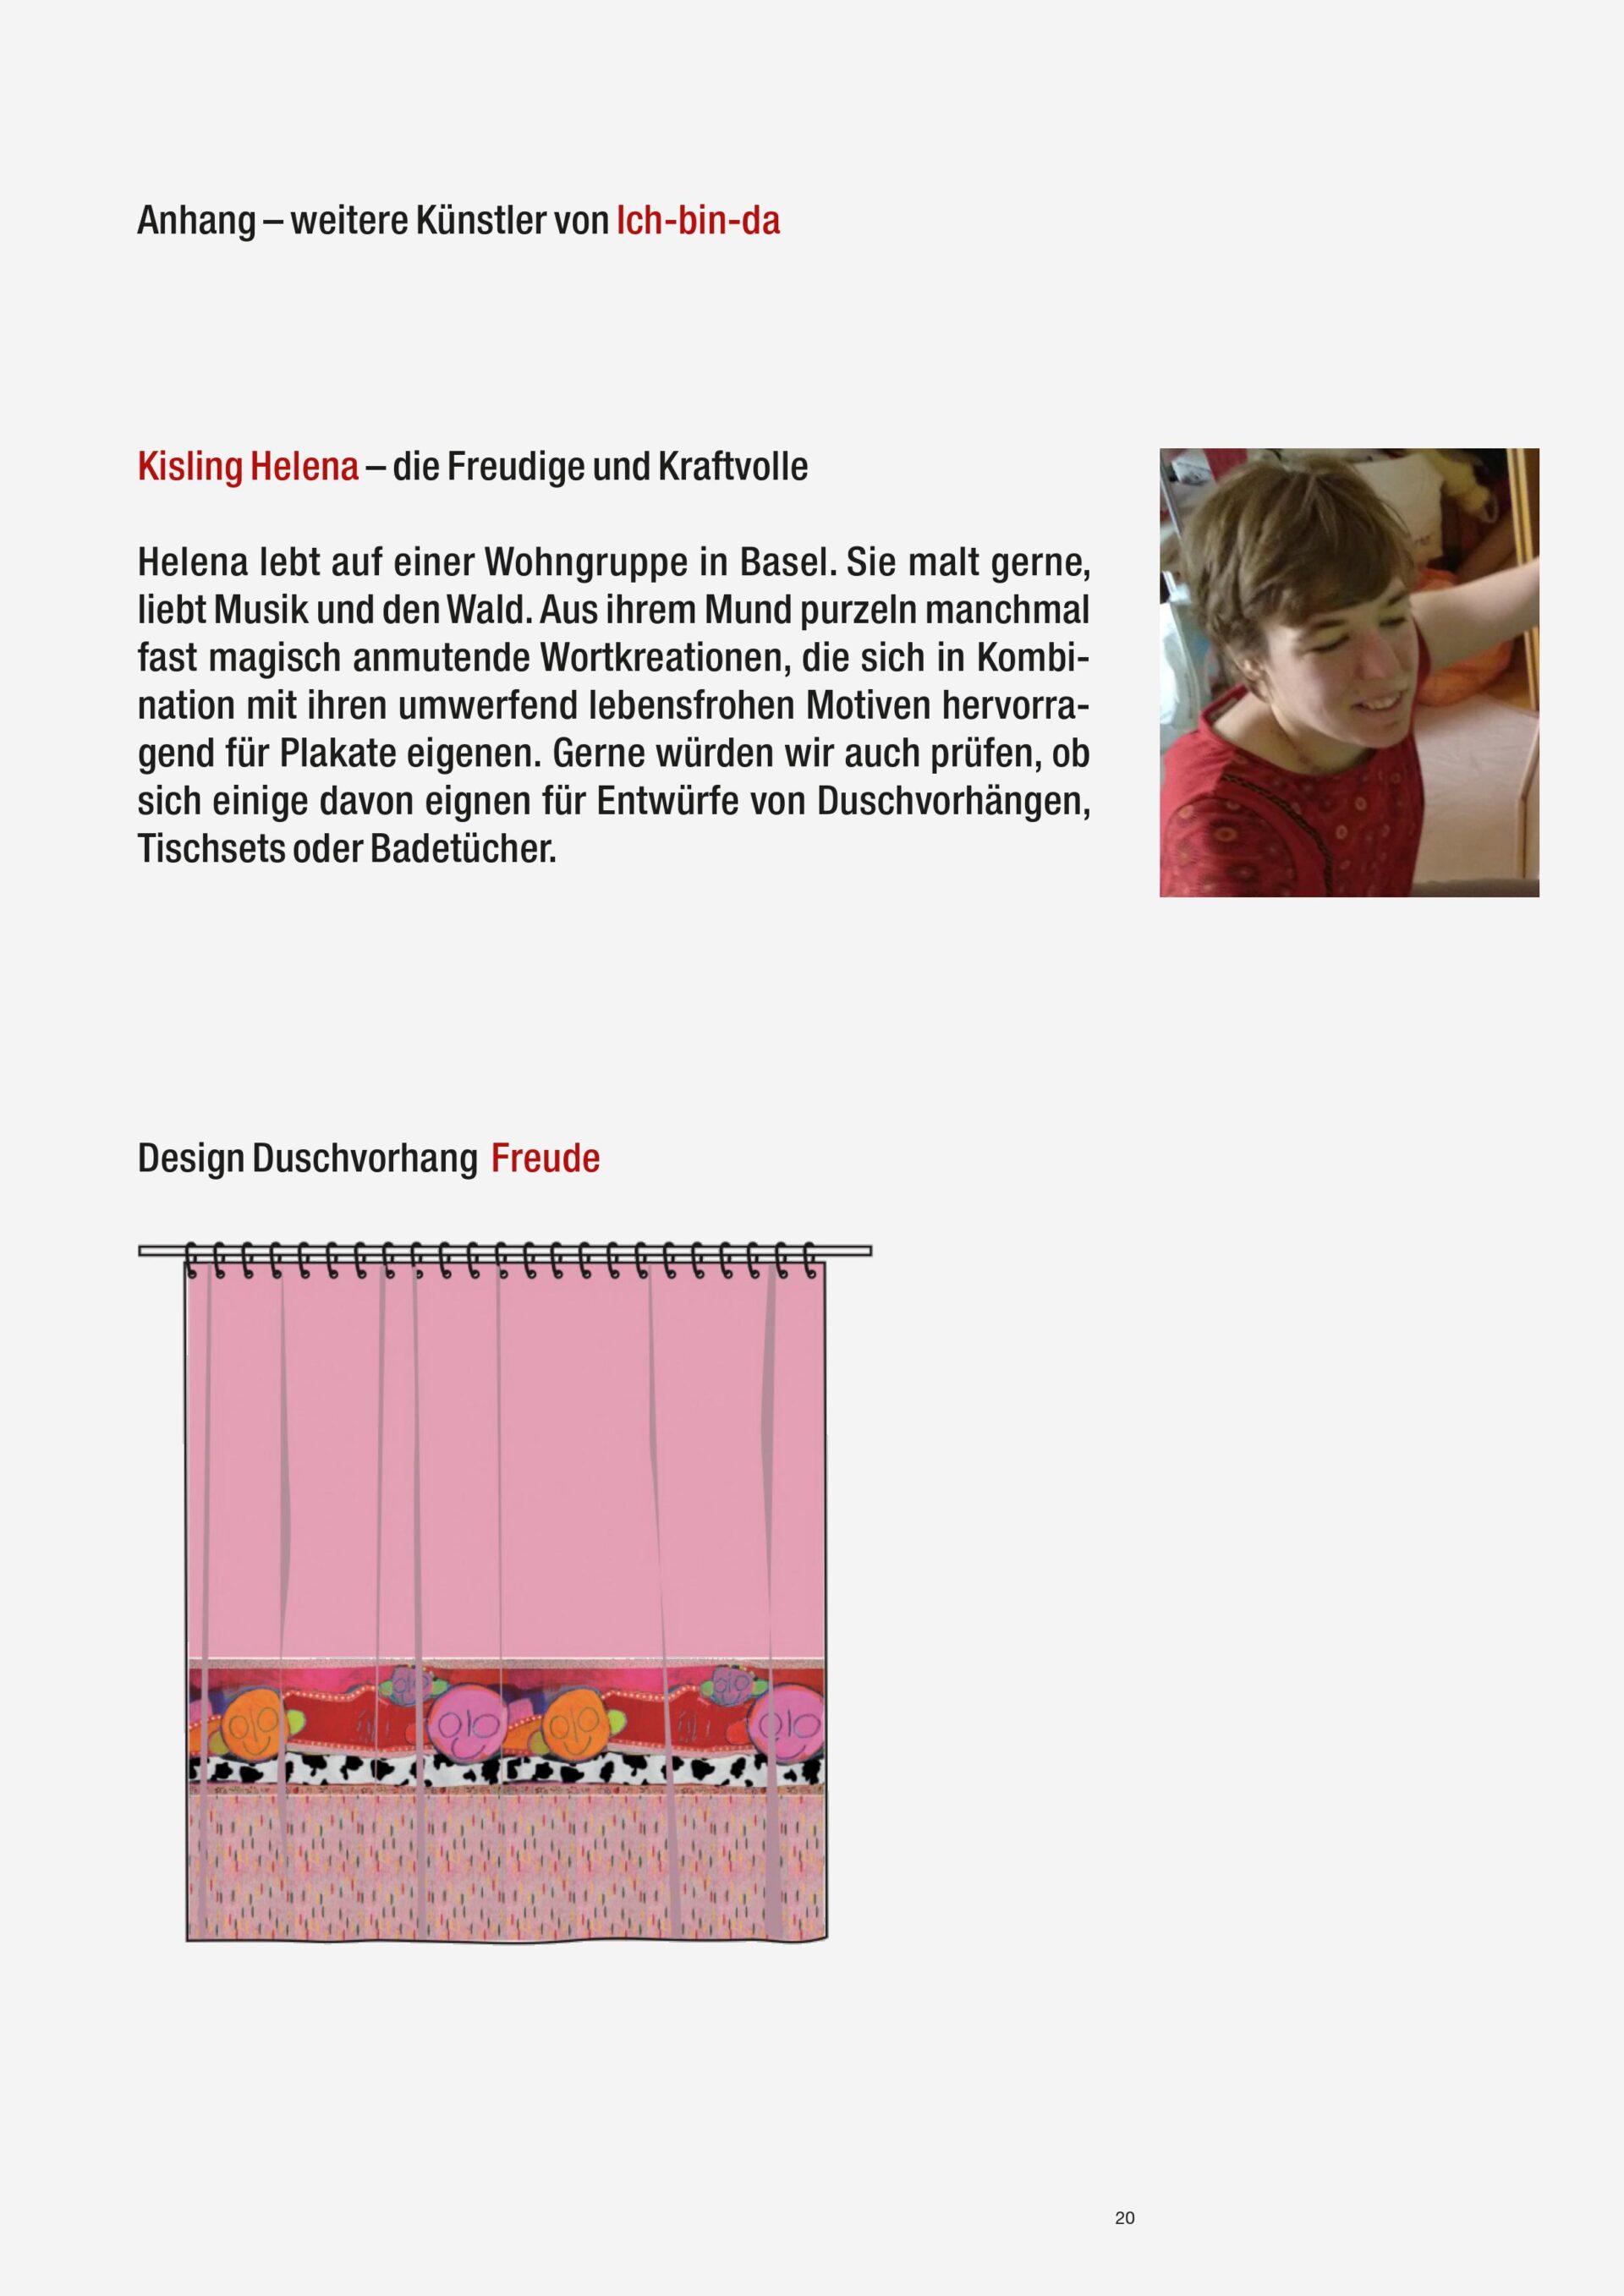 textildesign-menschen-mit-behinderungen-kunst-art-brut-basel-schweiz-piatti